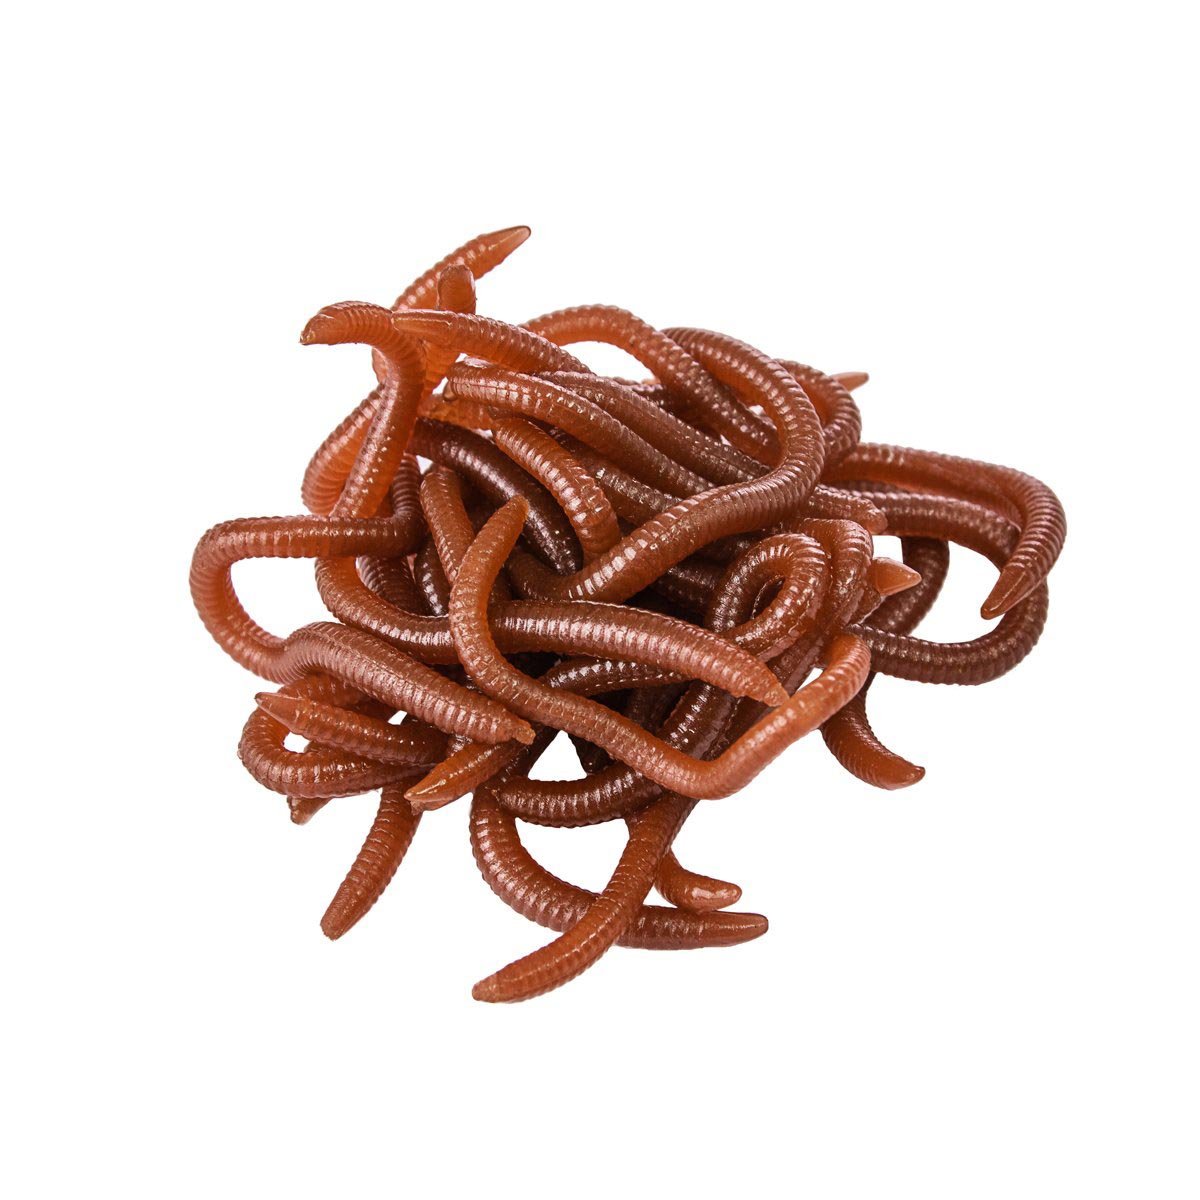 Artificial Lure Earthworm 1.5 Oz